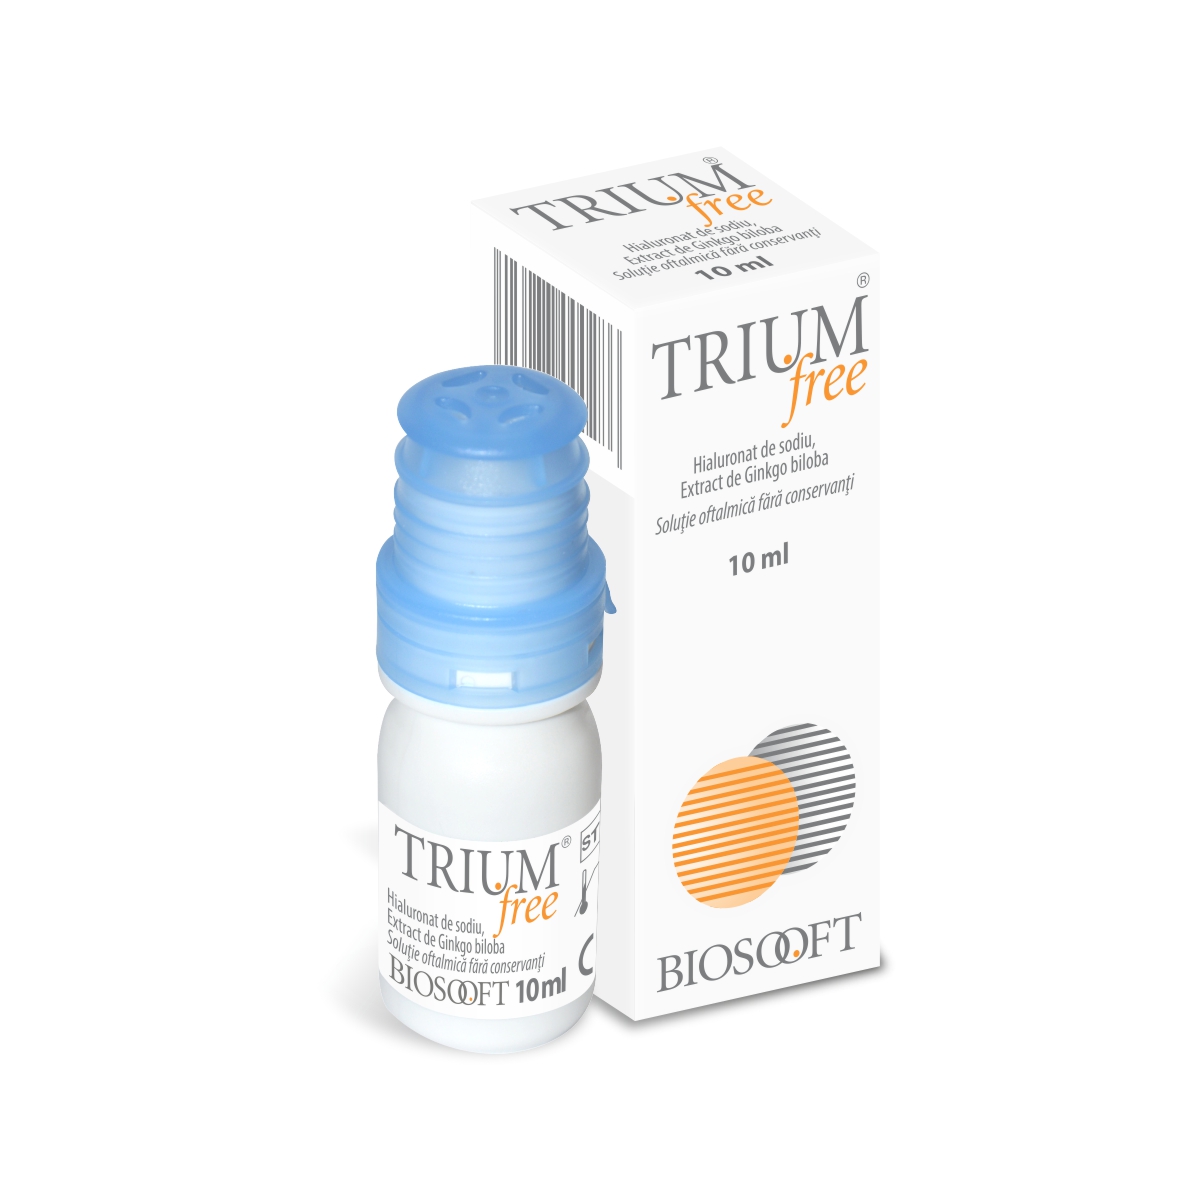 Trium free picaturi,10 ml, Biosooft Italia